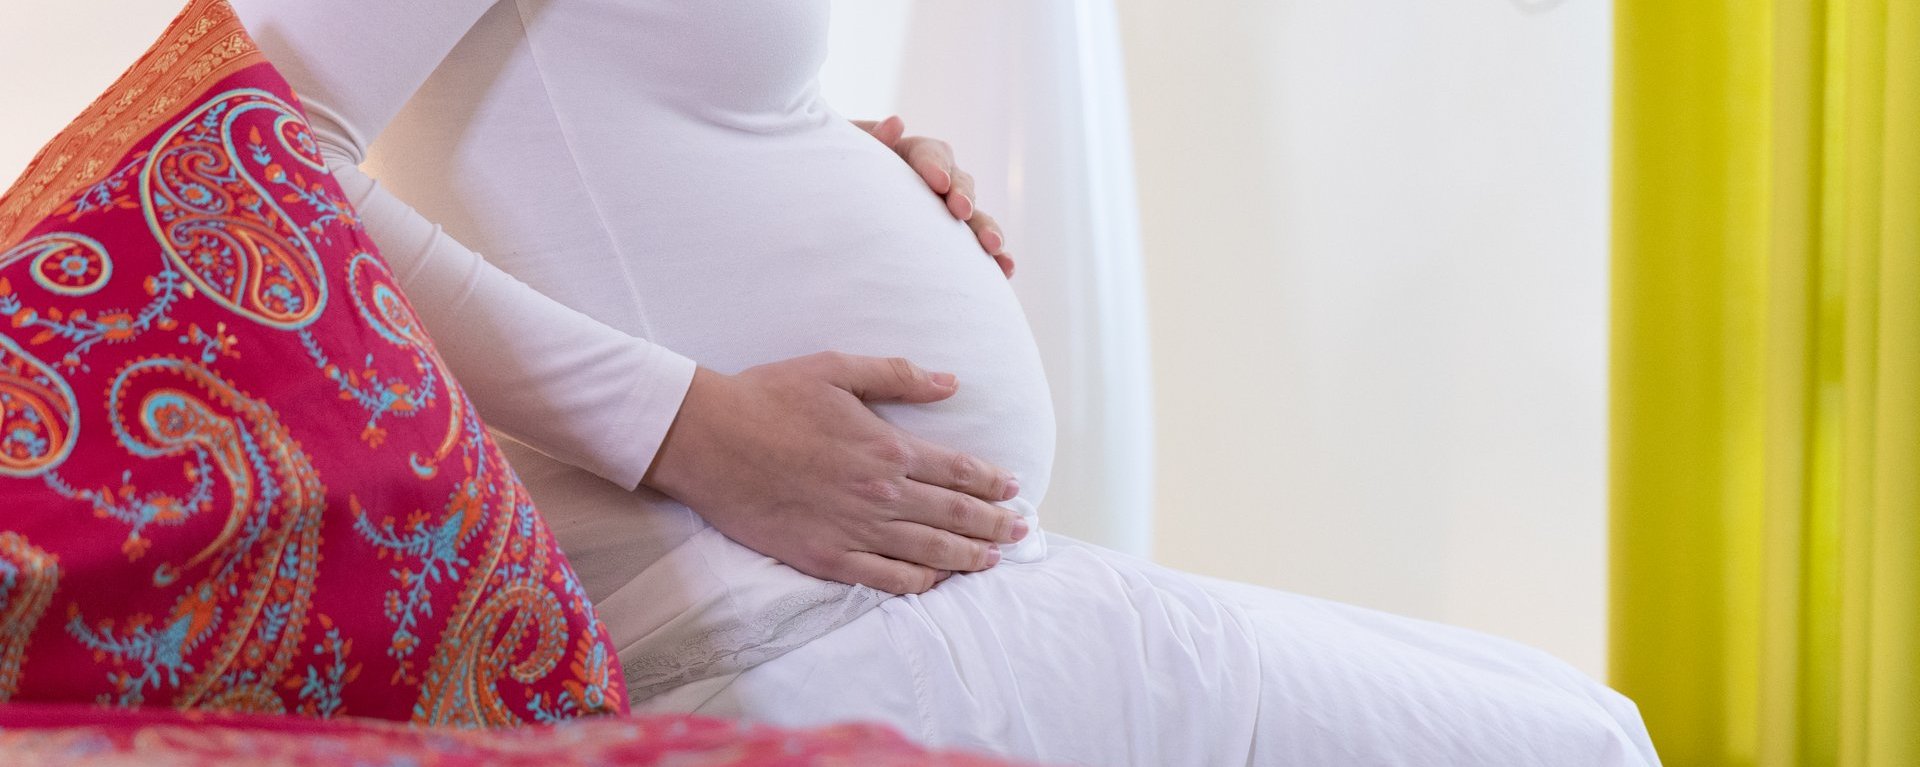 Eine sitzende, schwangere Frau berührt ihren Bauch